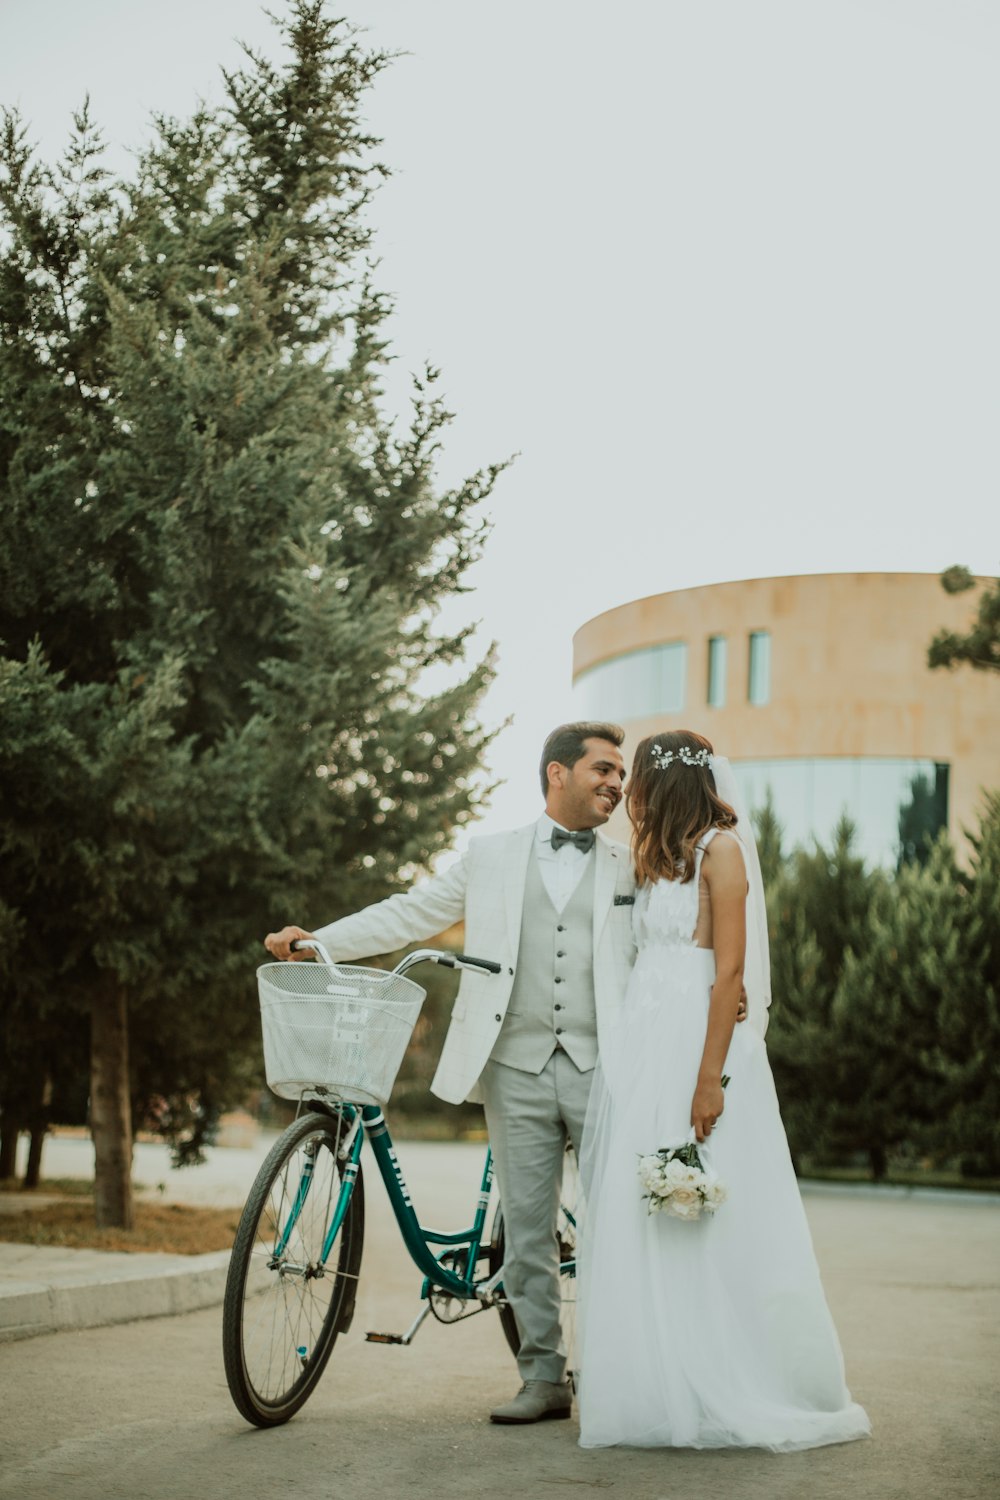 hombre y mujer con vestido de novia al lado de la bicicleta cerca del árbol durante el día